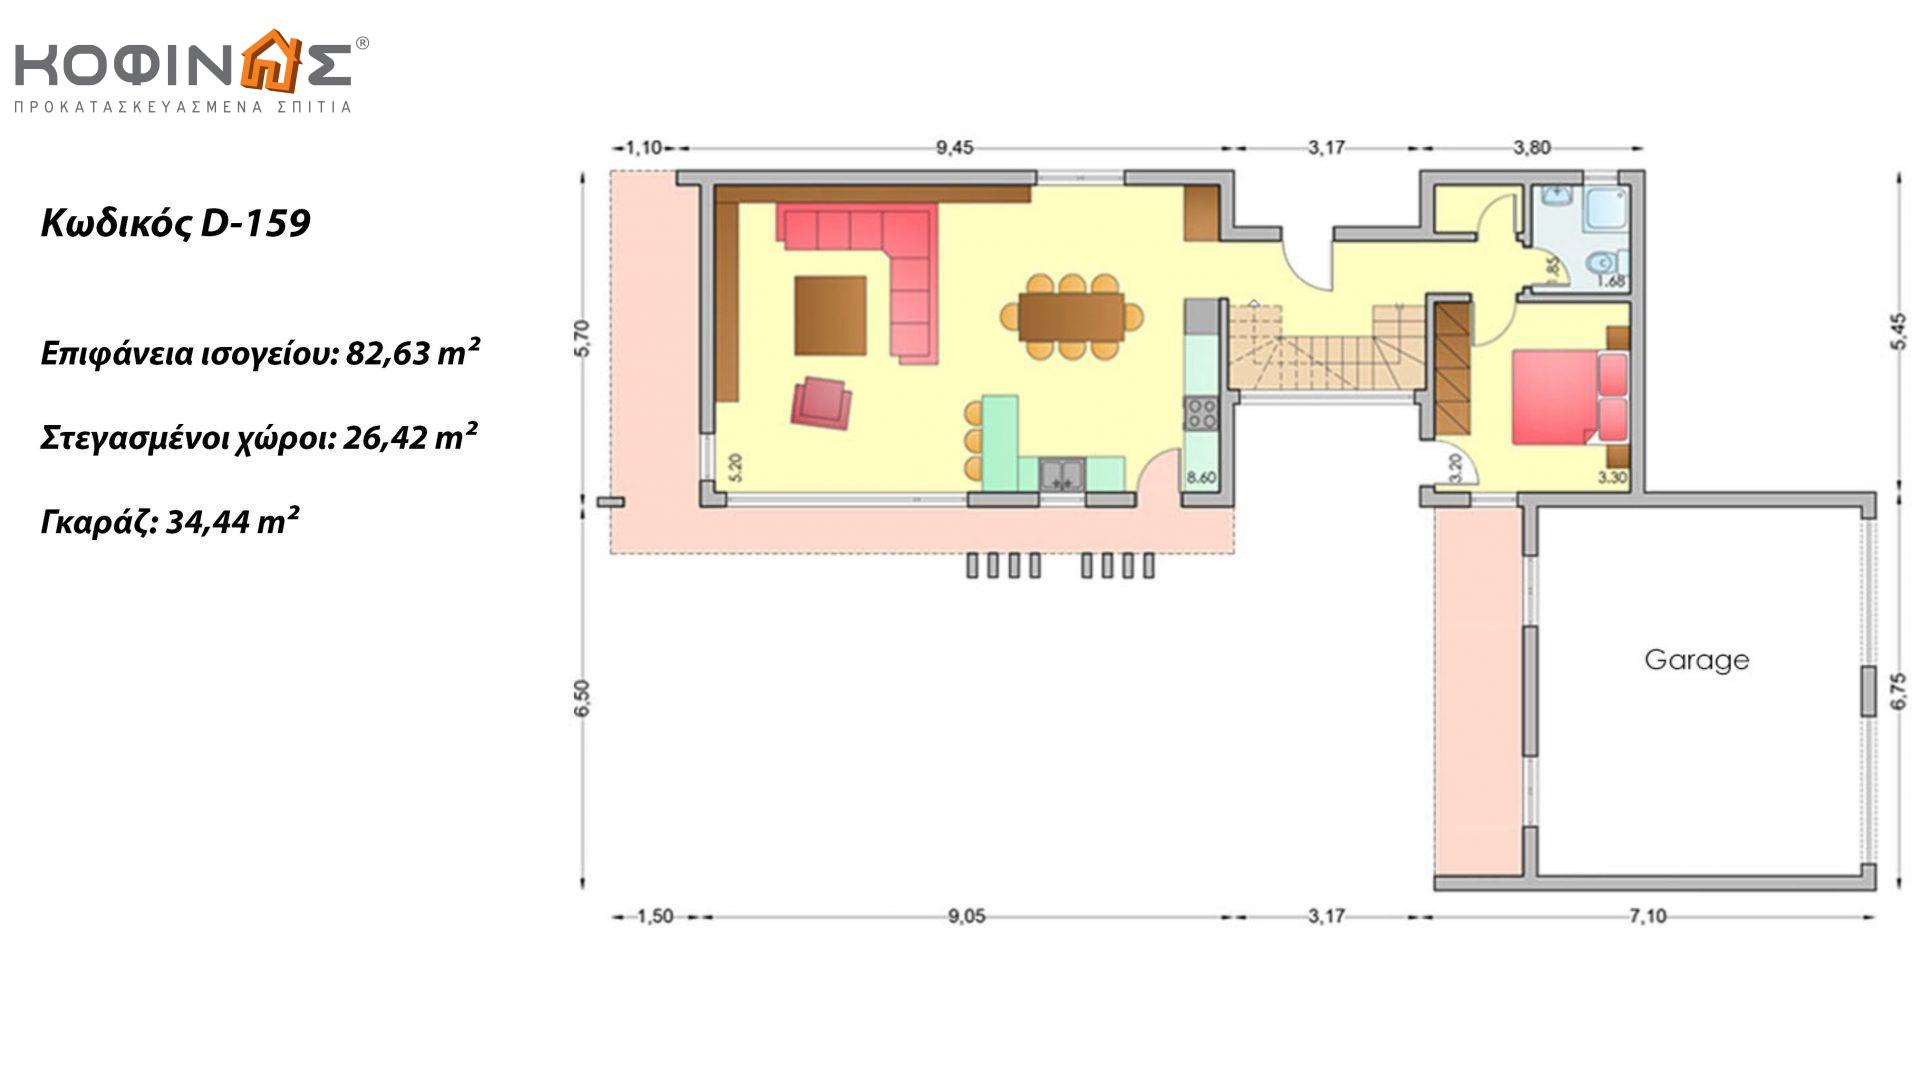 Διώροφη Κατοικία D-159, συνολικής επιφάνειας 159,96 τ.μ., +Γκαράζ 34.44 m²(=194.40 m²),συνολική επιφάνεια στεγασμένων χώρων 34.32 τ.μ.